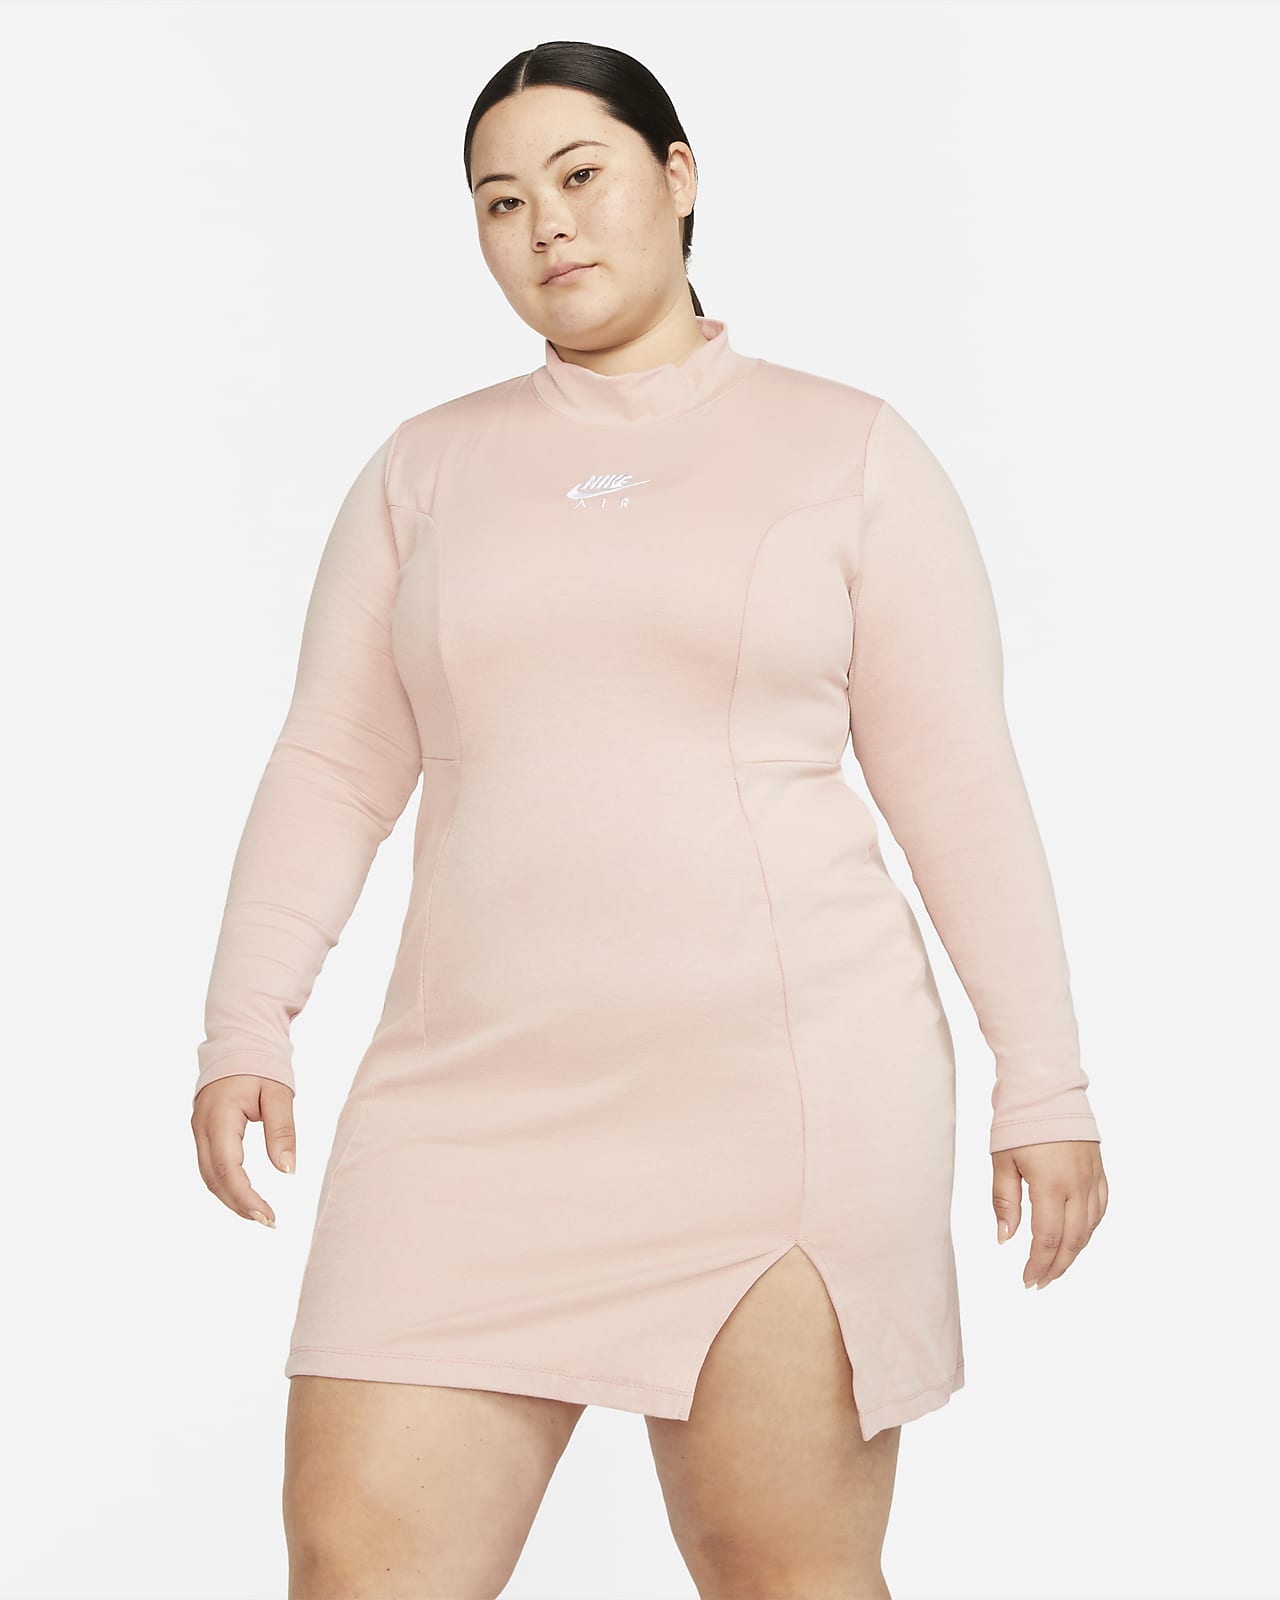 Nike Air Women's Dress (Plus Size 